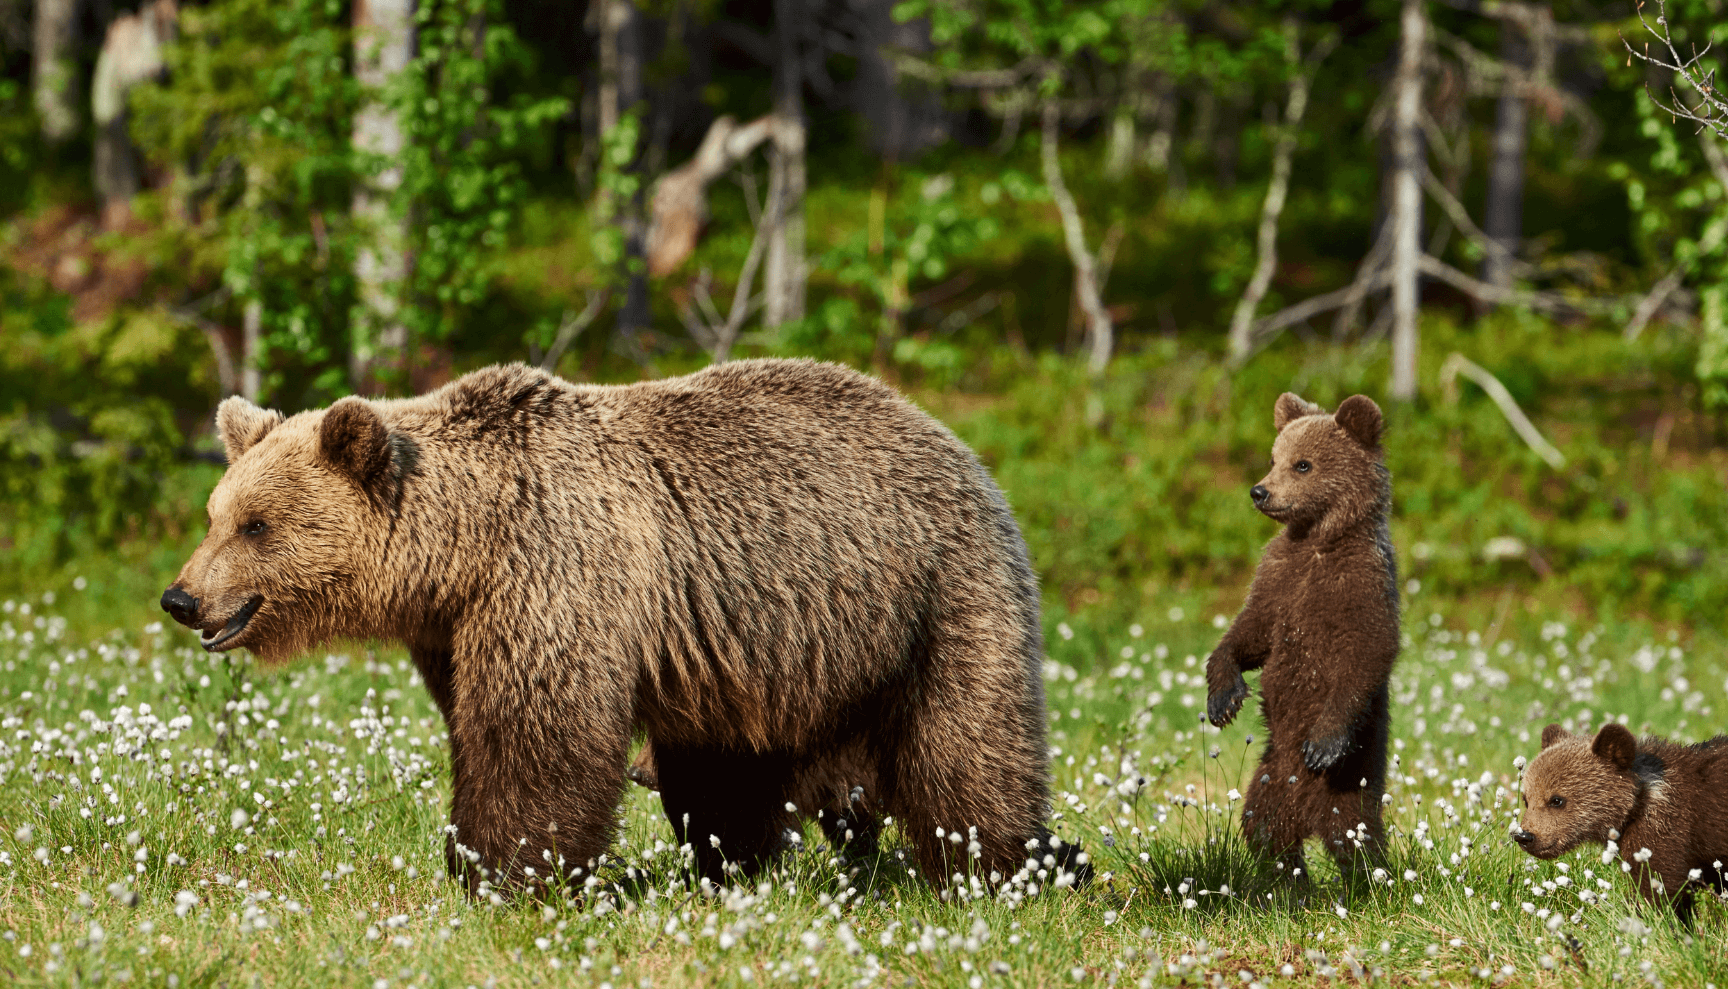 Identify grizzly bear